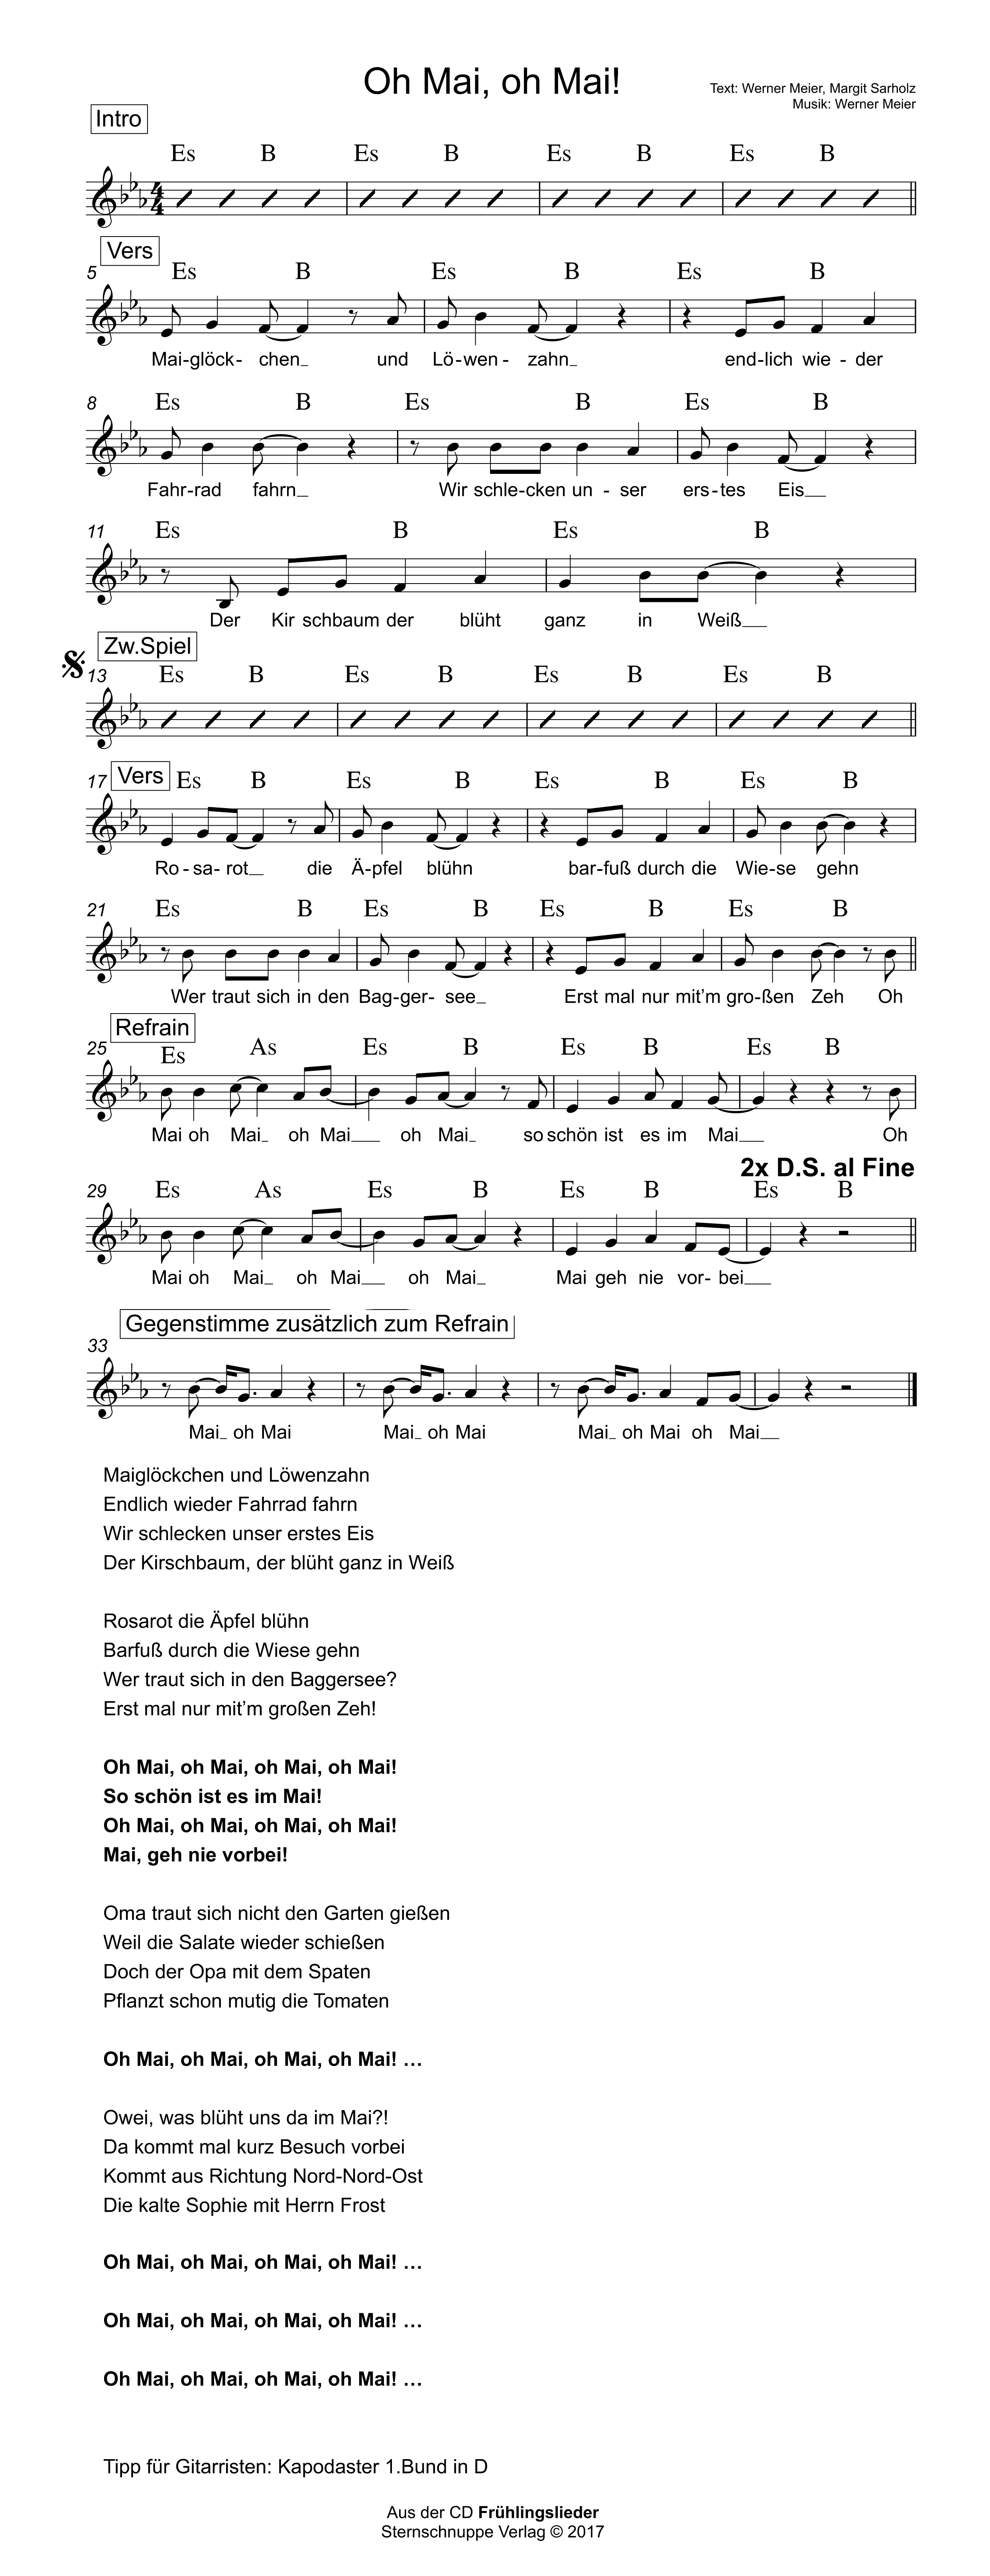 Liedtext, Akkorde und Noten vom Kinderlied Oh Mai, oh Mai!